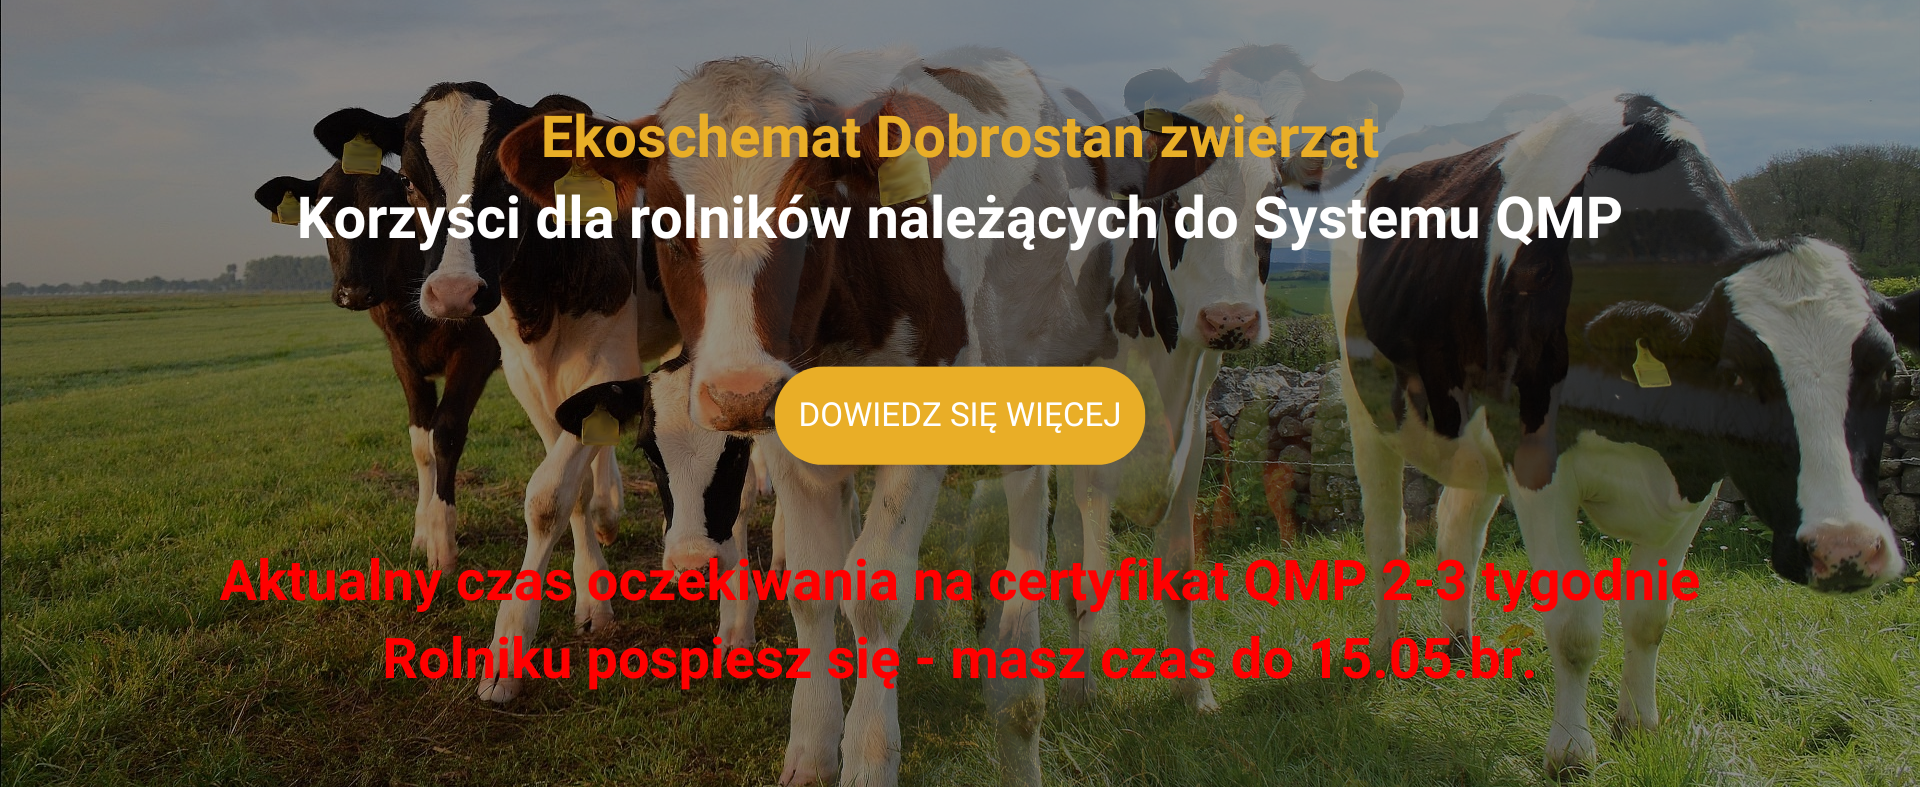 Ekoschemat Dobrostan zwierząt – korzyści dla rolników należących do Systemu QMP 